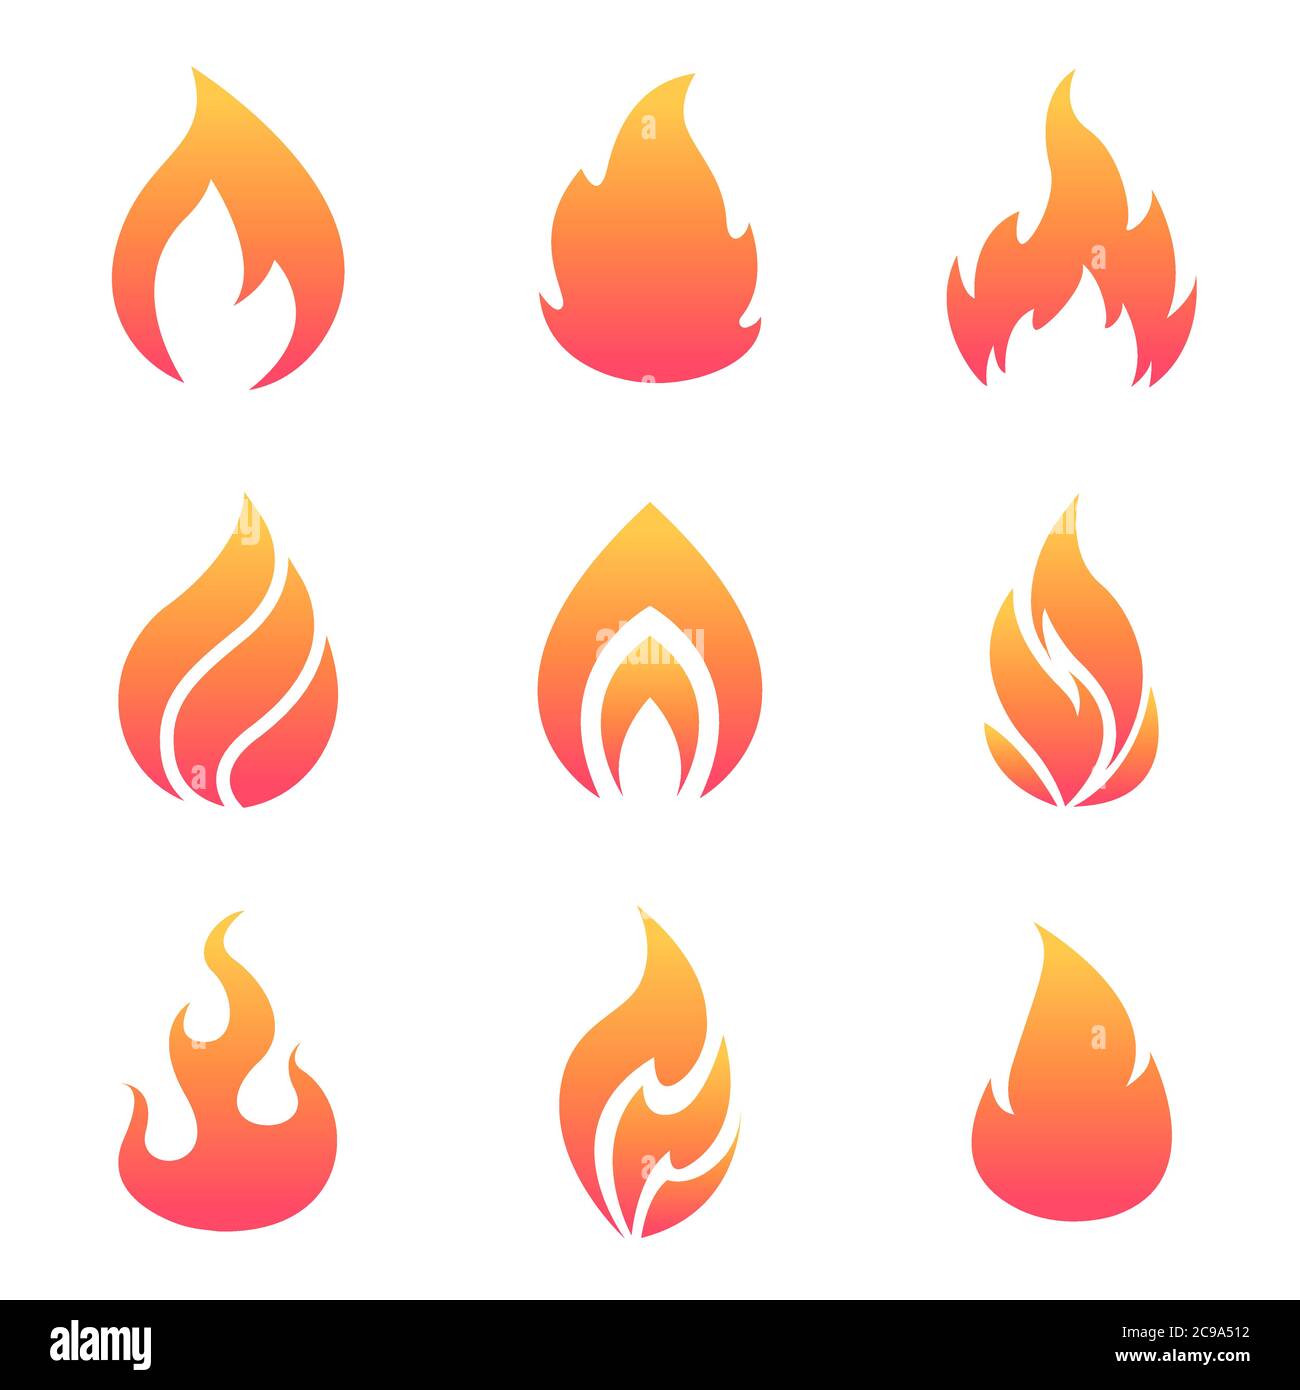 Ensemble de flammes de dessin animé. Icônes de feu plat isolées sur fond blanc pour le concept de danger ou la conception de logo. Illustrateur de vecteur Illustration de Vecteur